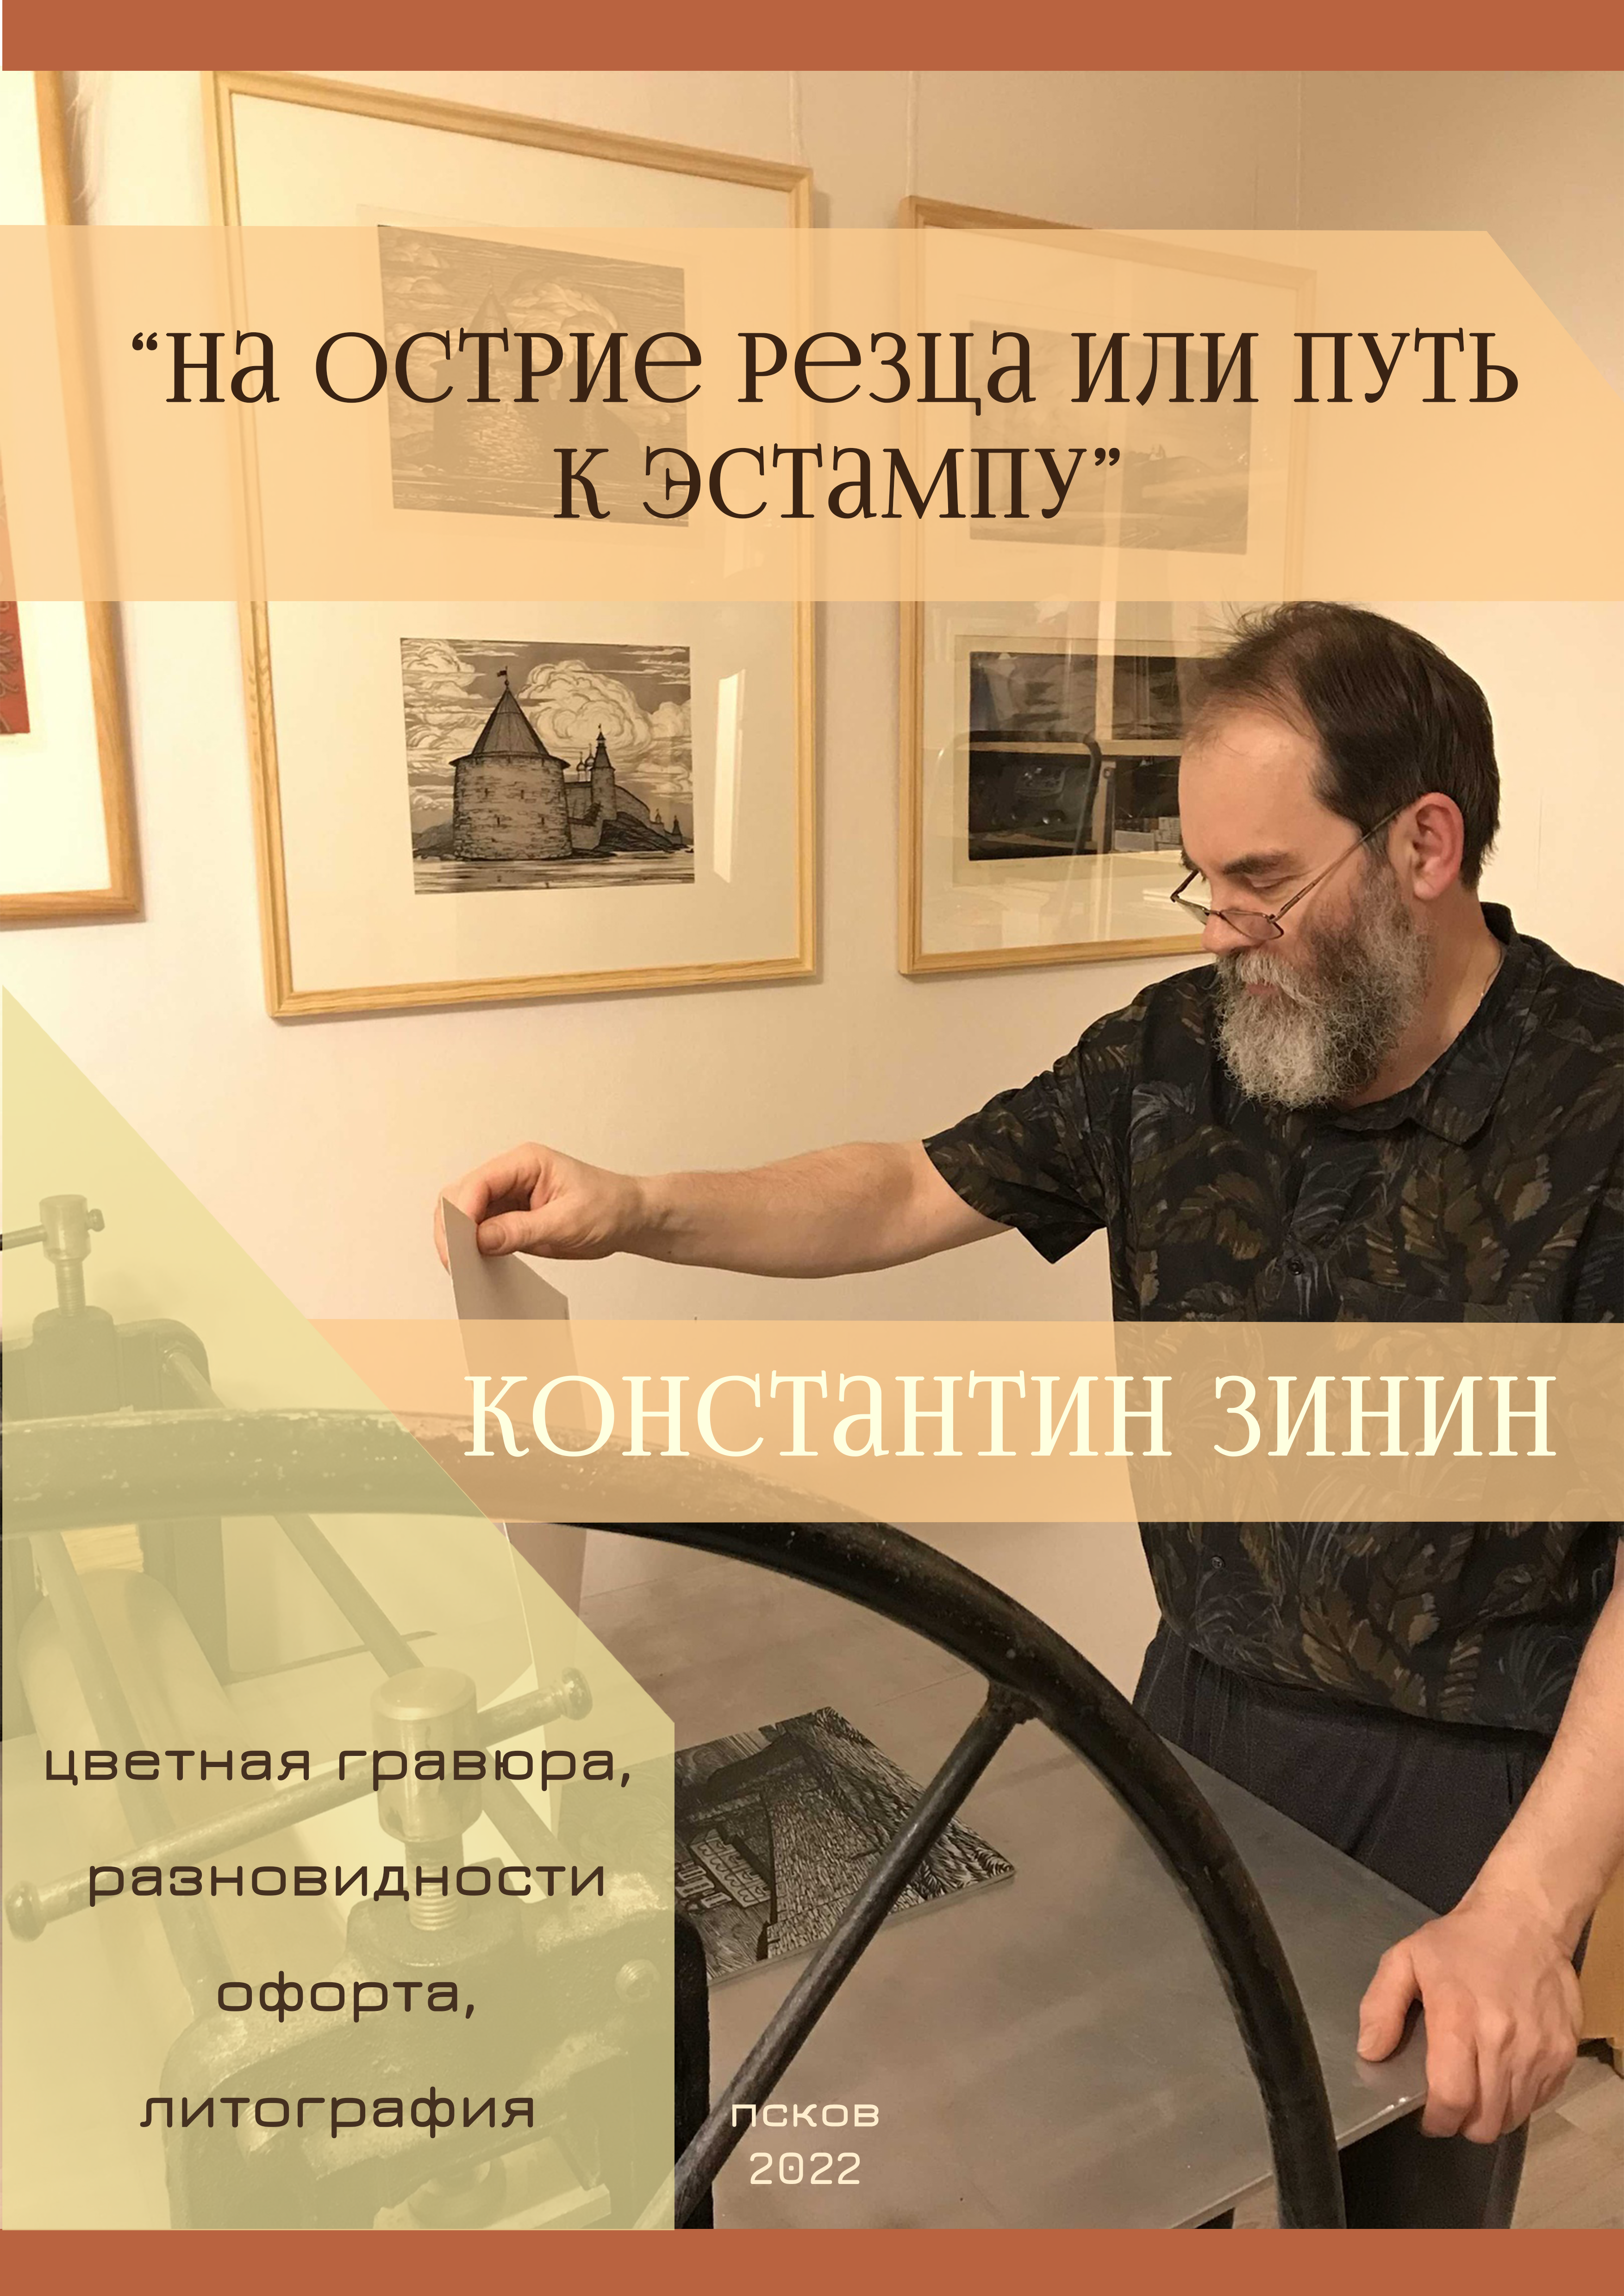 personalnaya-vystavka-konstantina-zinina-otkroetsya-10-marta